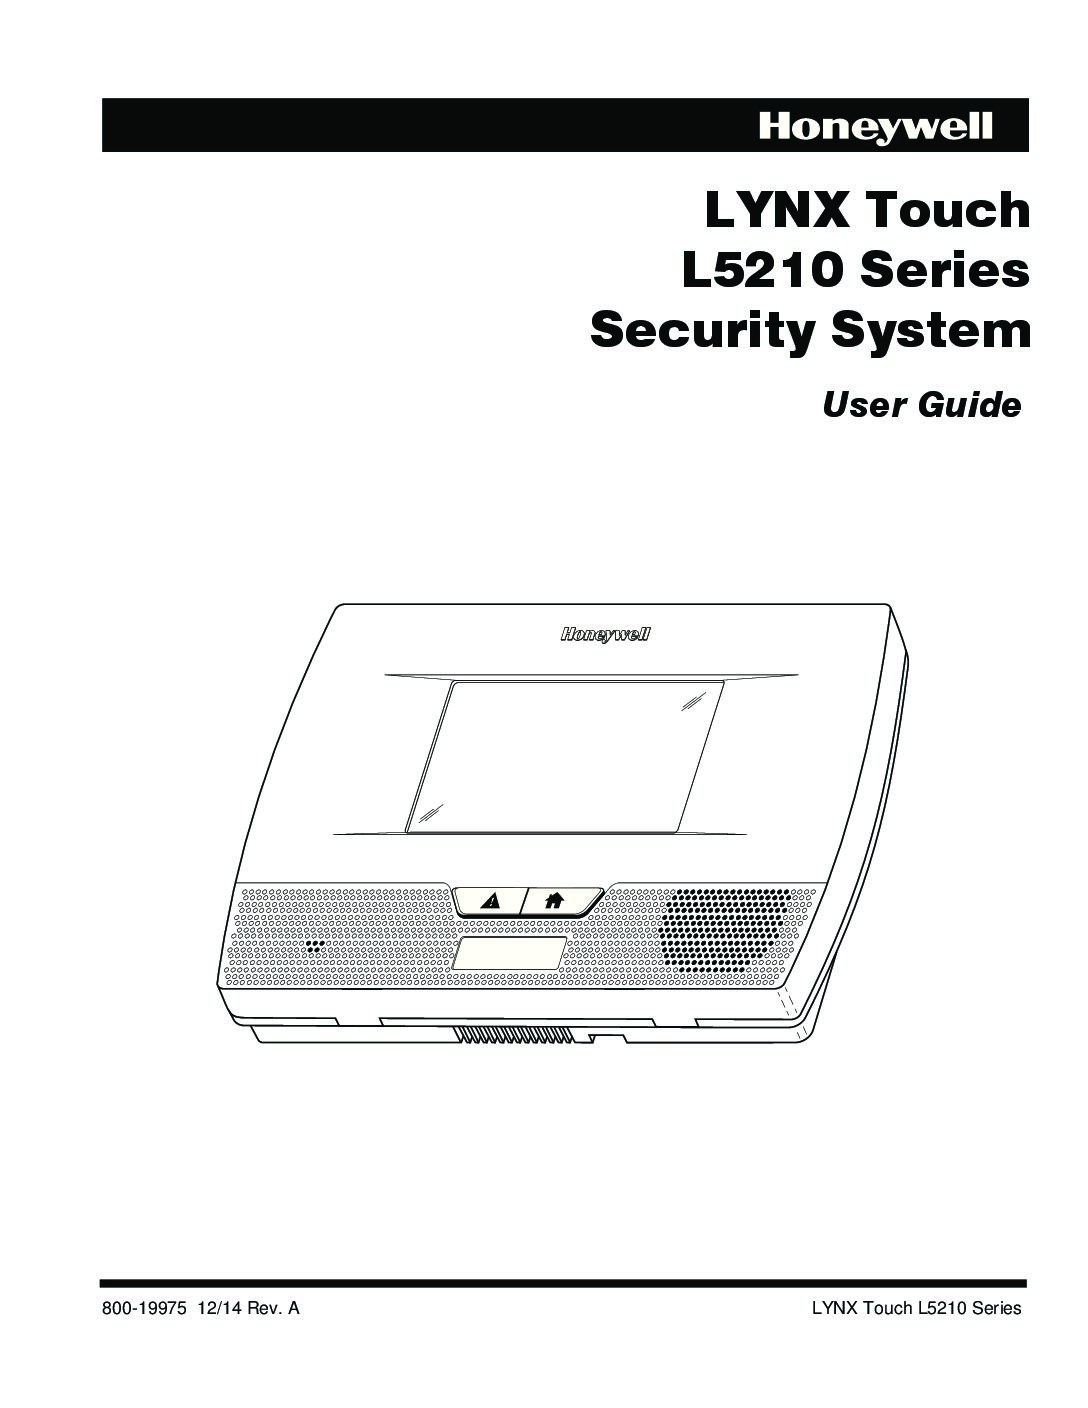 linx cj400 service manual pdf